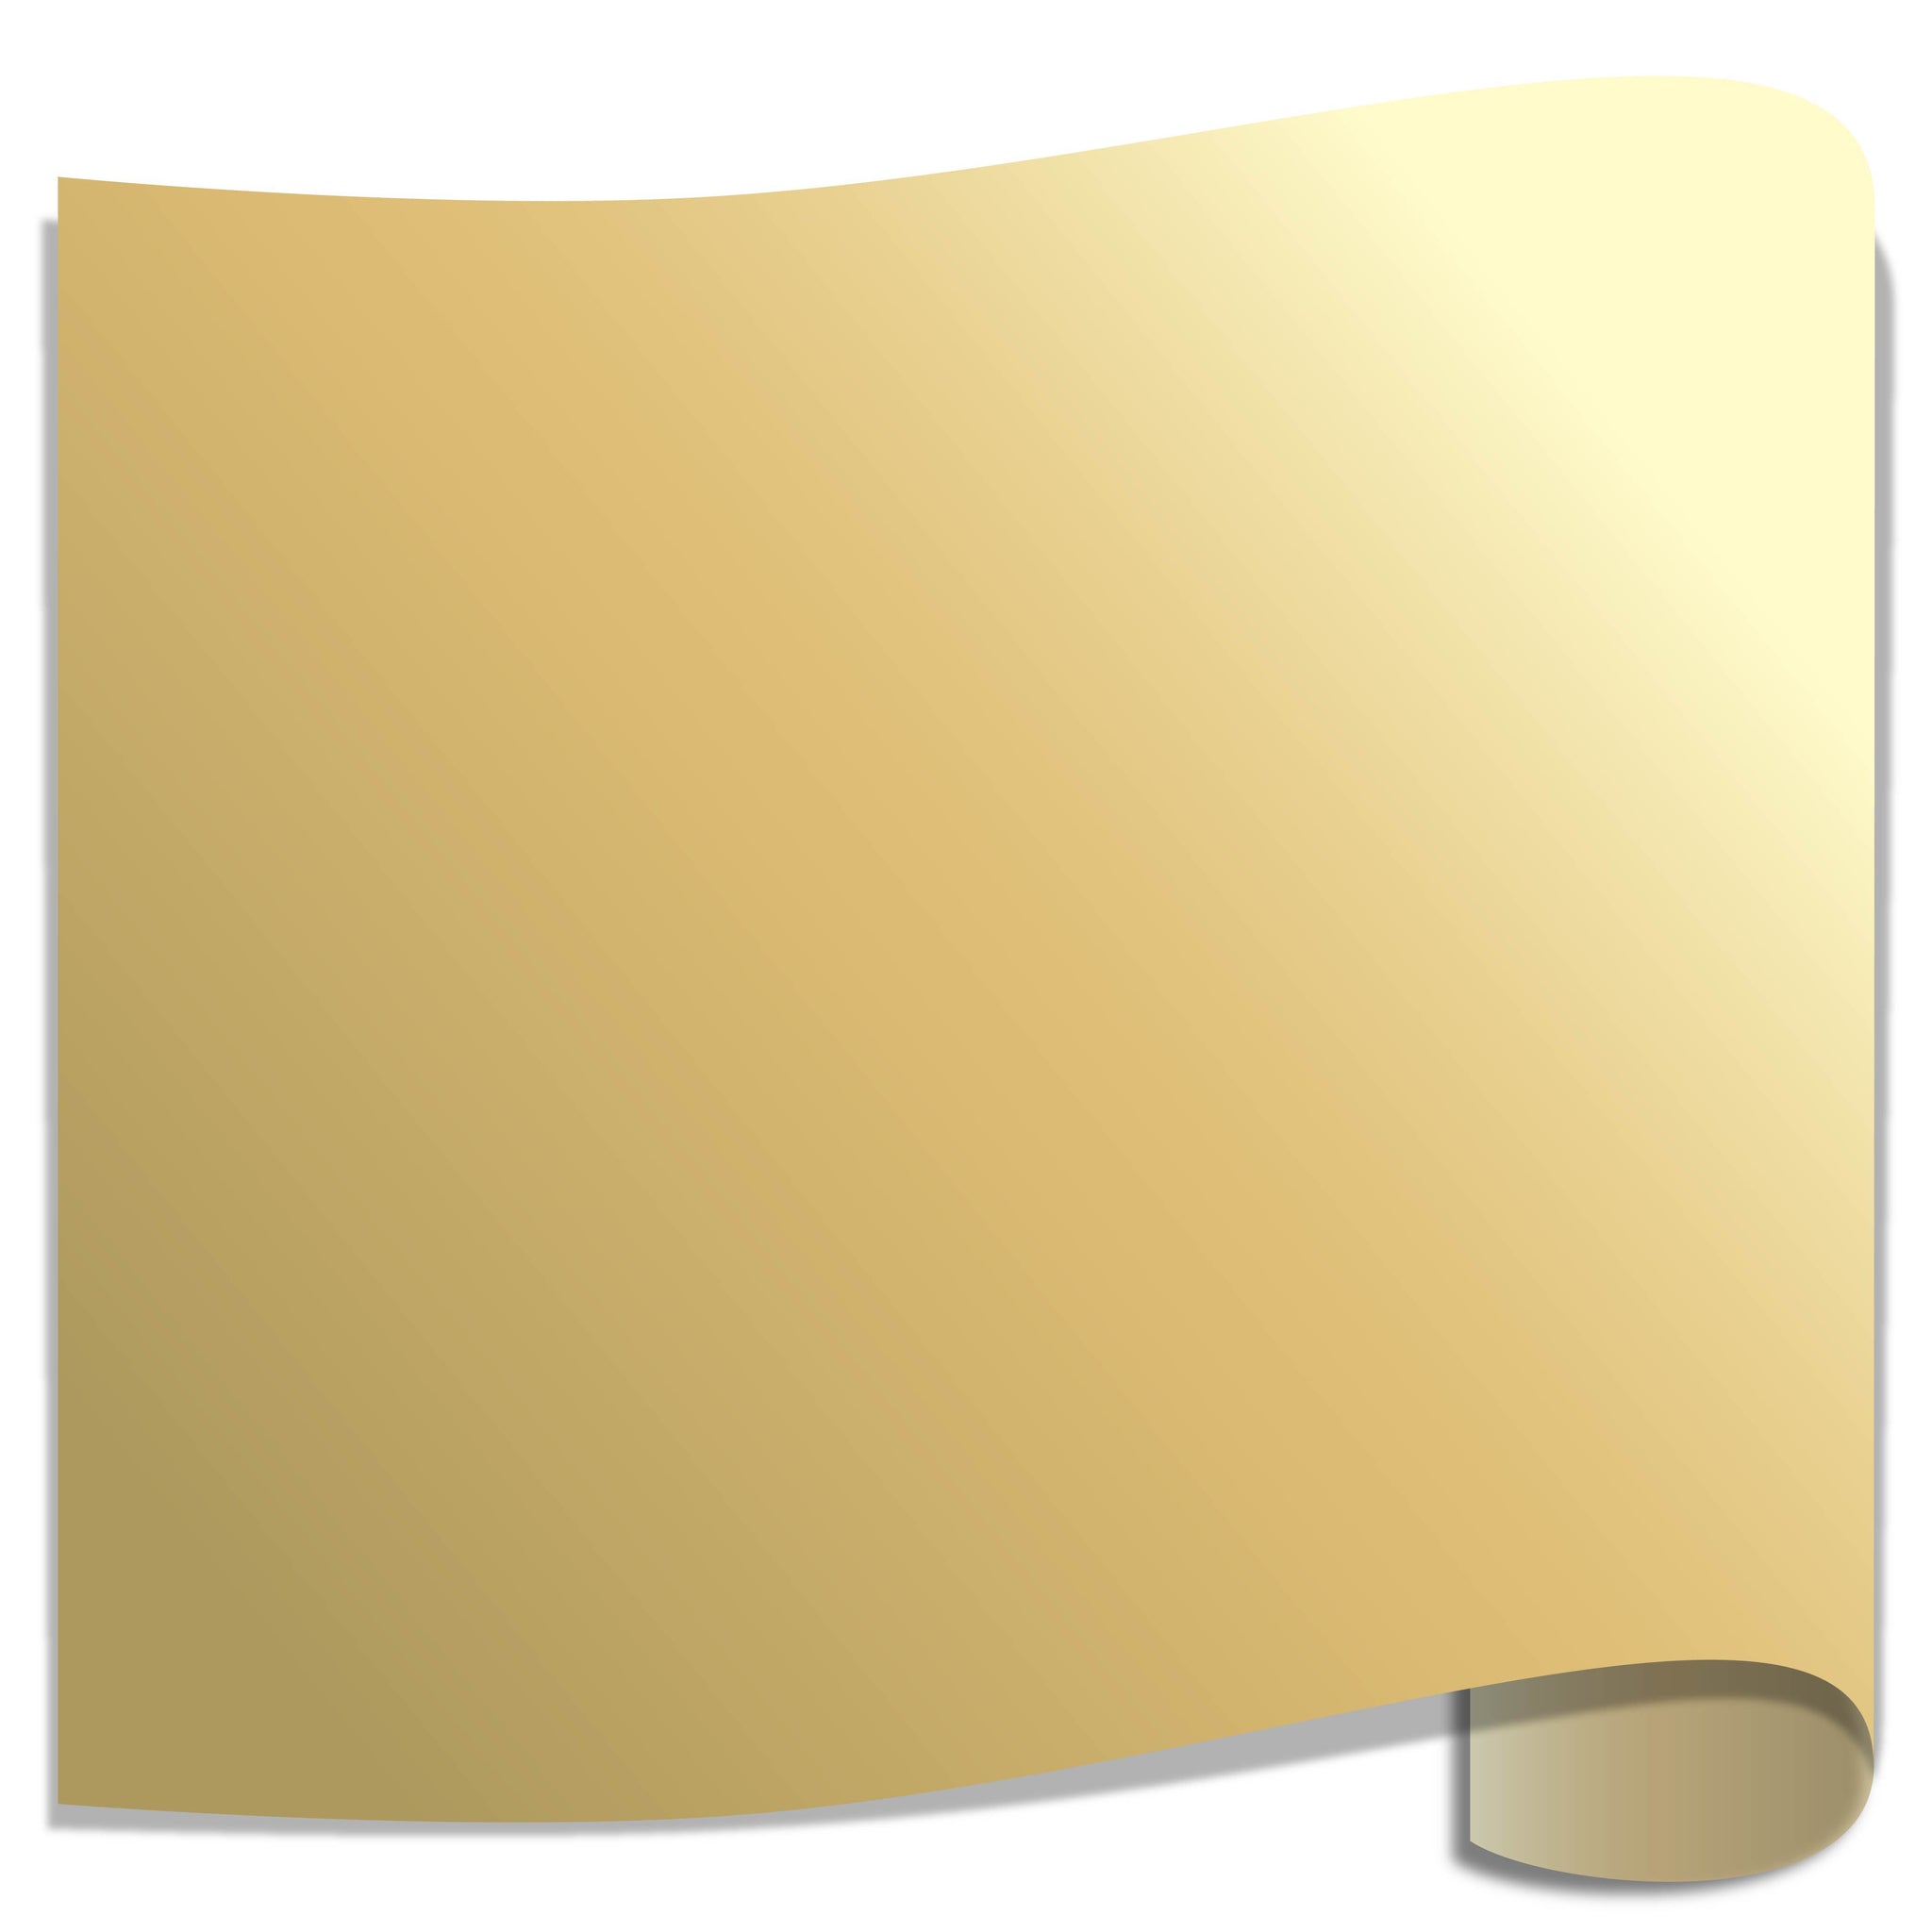 Pastel Yellow HTV Sheet 12x15” – Vinyl Cut Pros